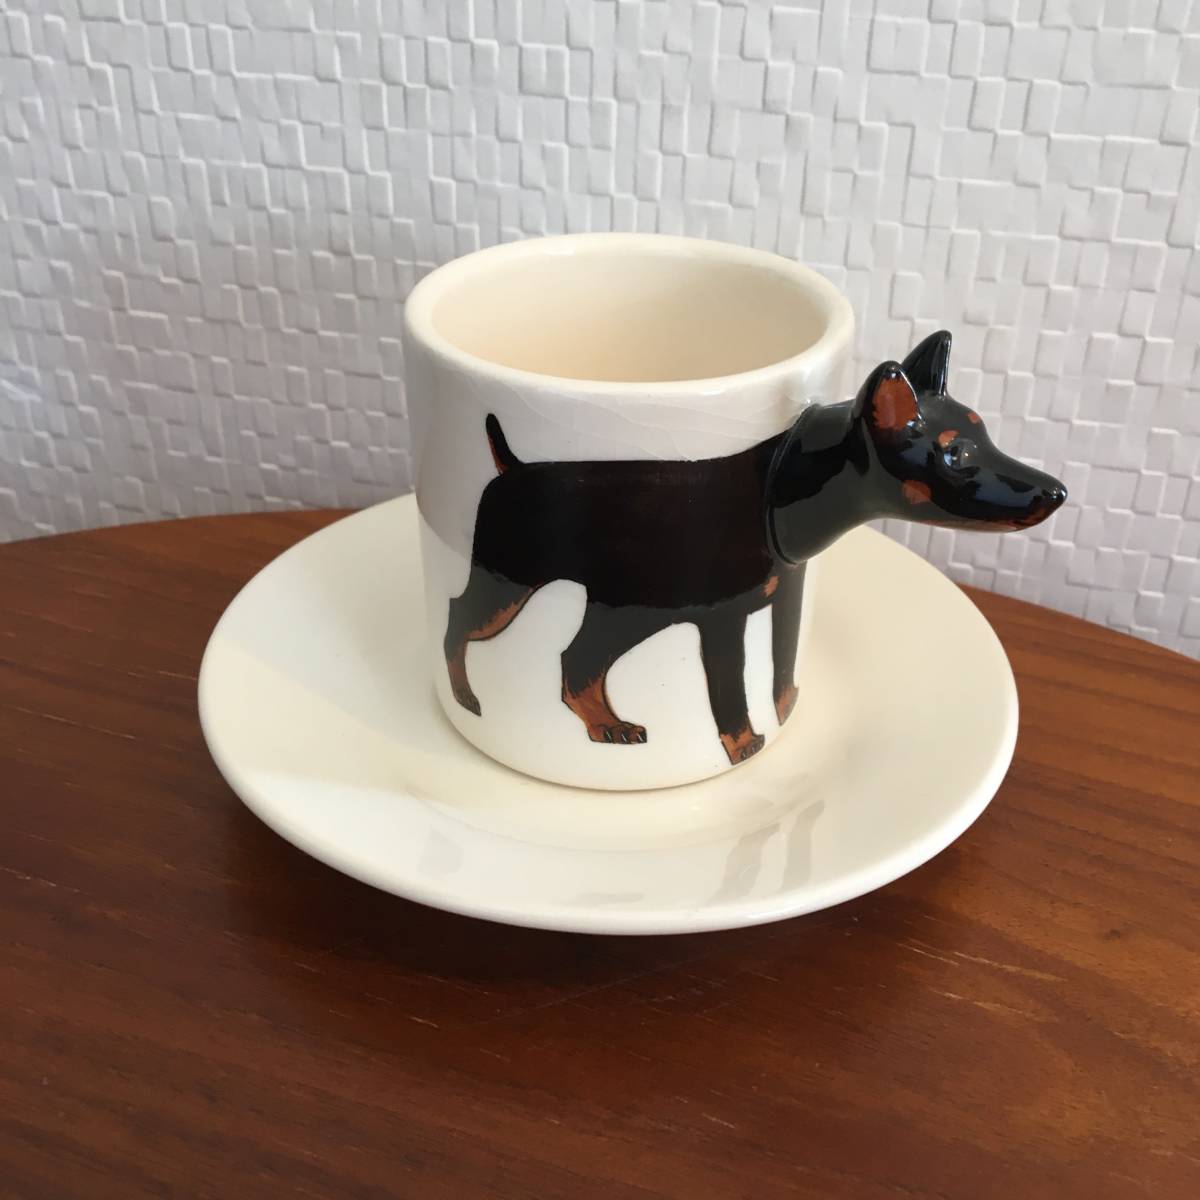 Dóberman | Juego de taza y platillo Animal 3D Colección 3D Cerámica Regalo de perro hecho a mano TAZA de café Espresso (Nuevo) (Comprar ahora), utensilios de té, taza y plato, Taza de café